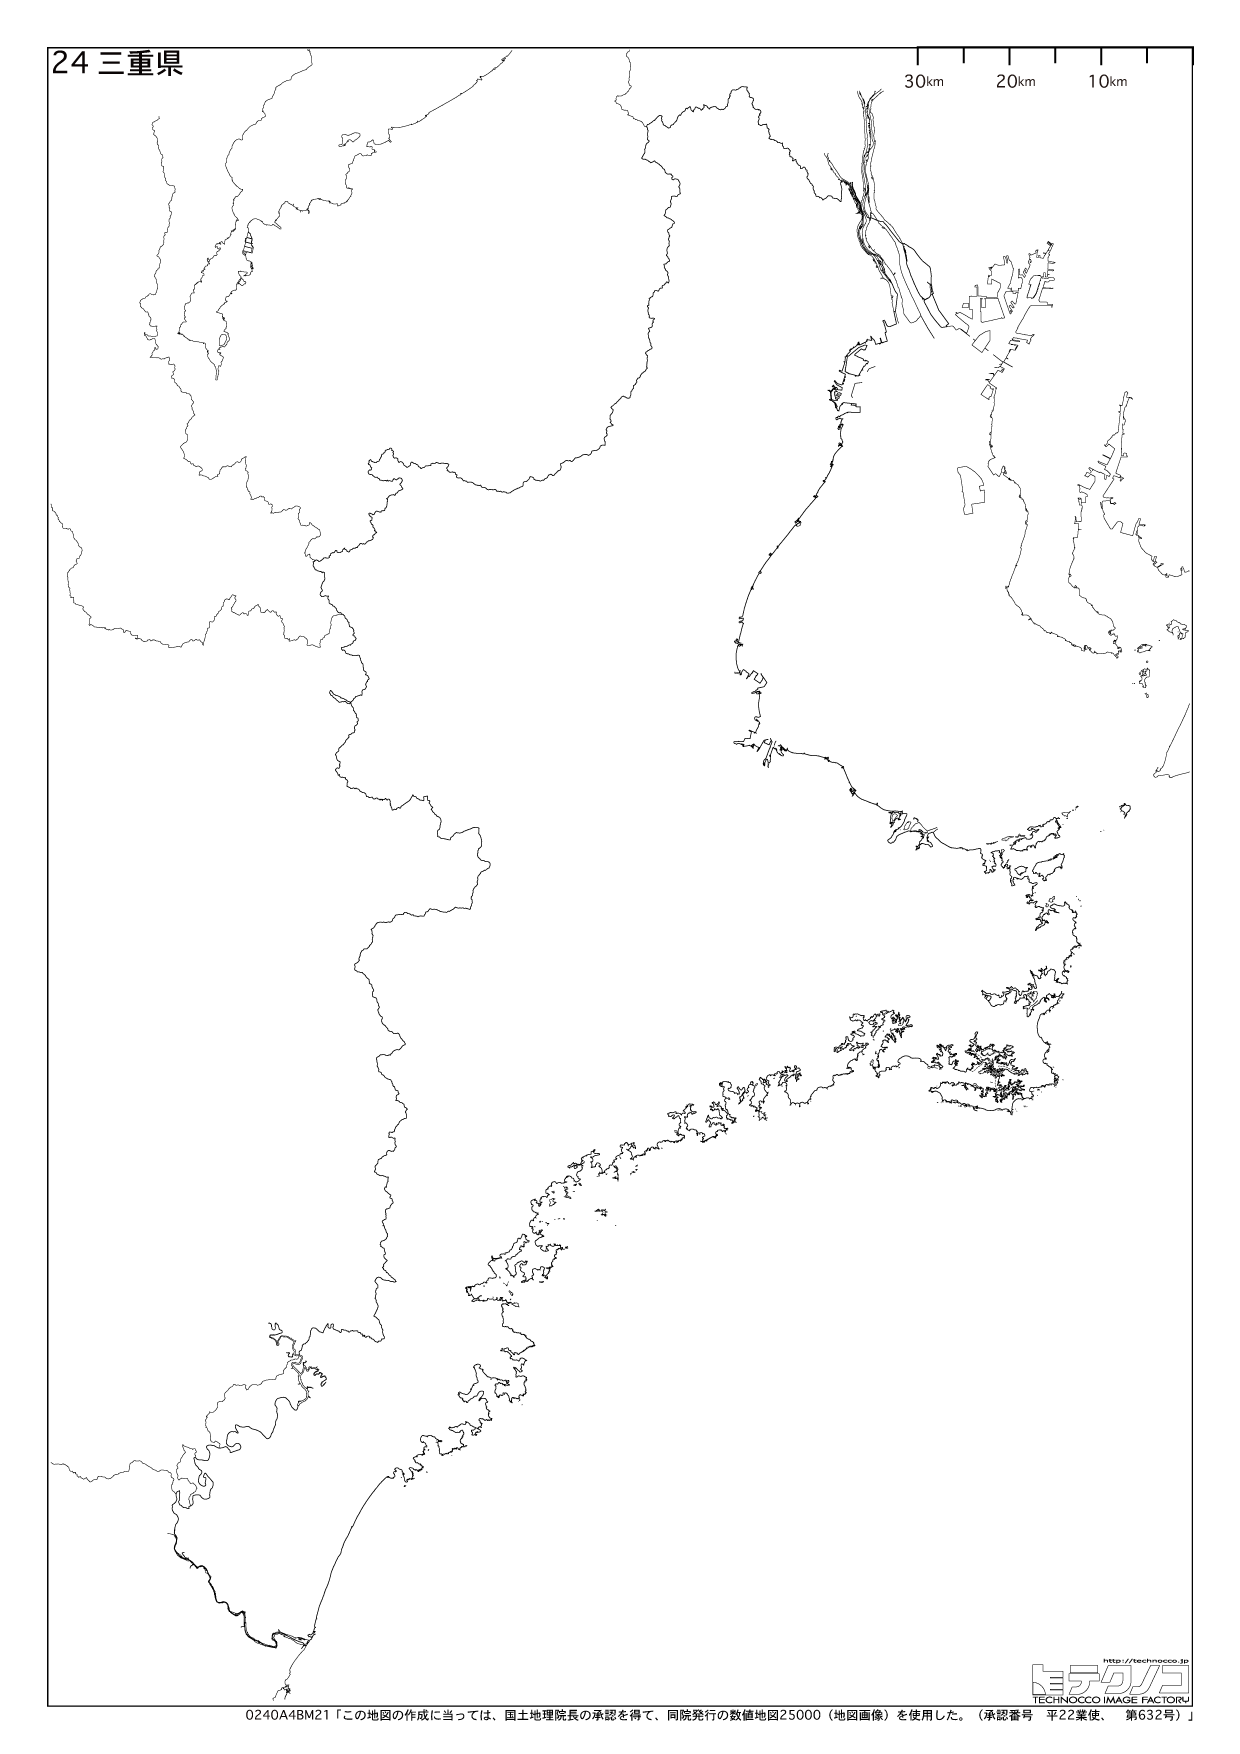 三重県の白地図と市町村の合併情報